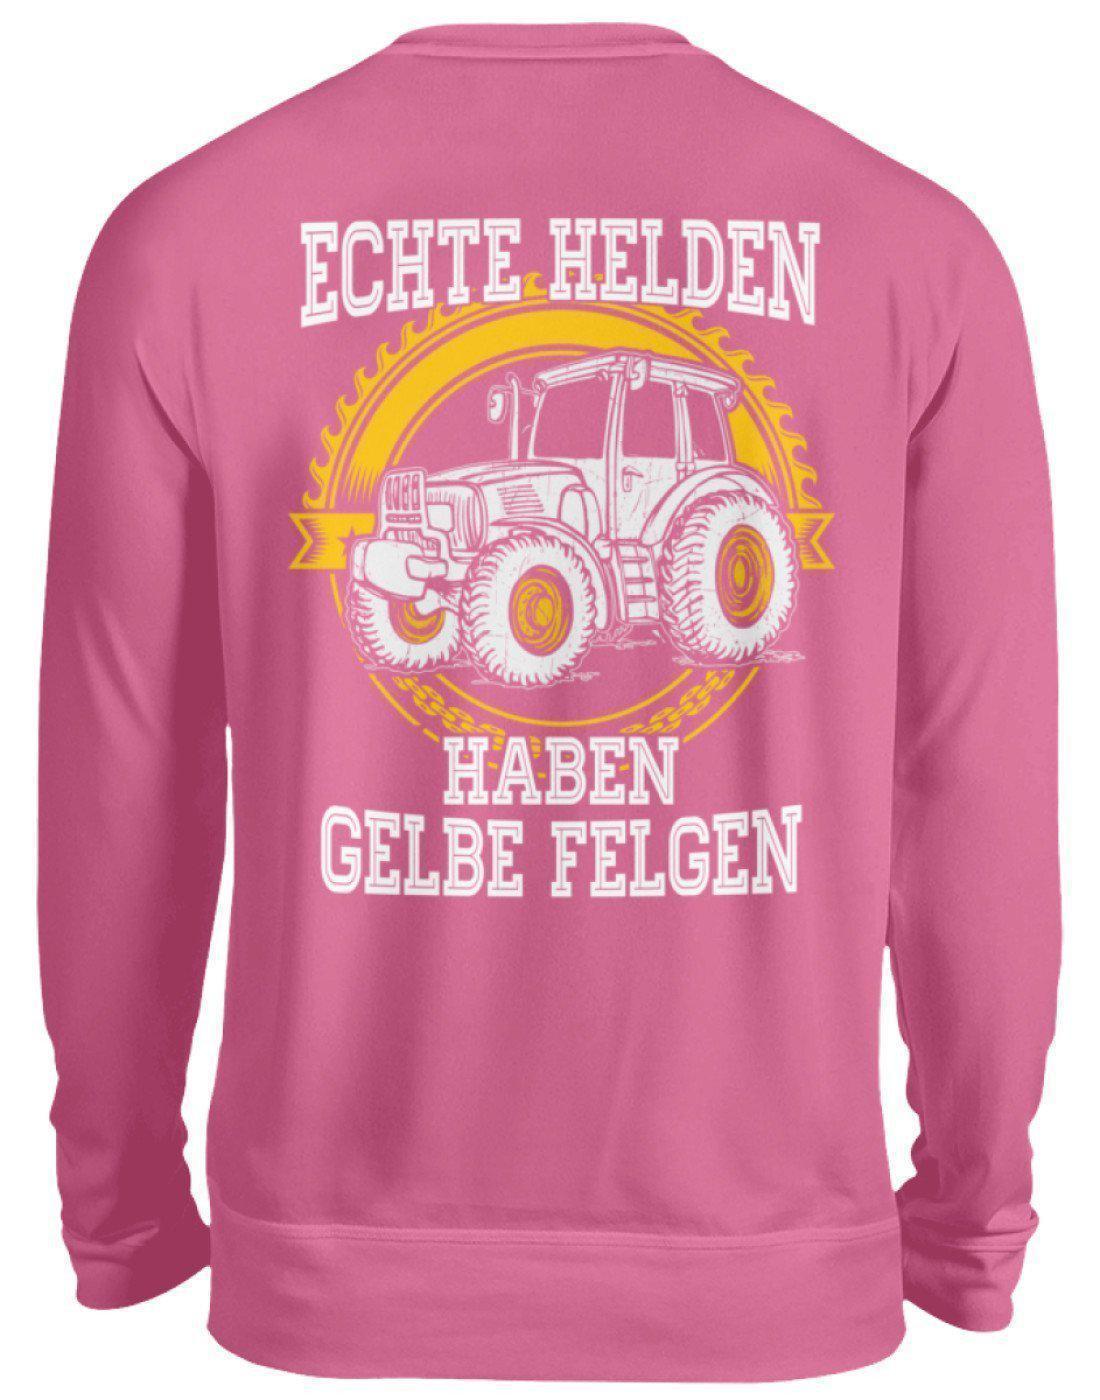 Echte Helden gelbe Felgen · Unisex Sweatshirt Pullover-Unisex Sweatshirt-Candyfloss Pink-S-Agrarstarz